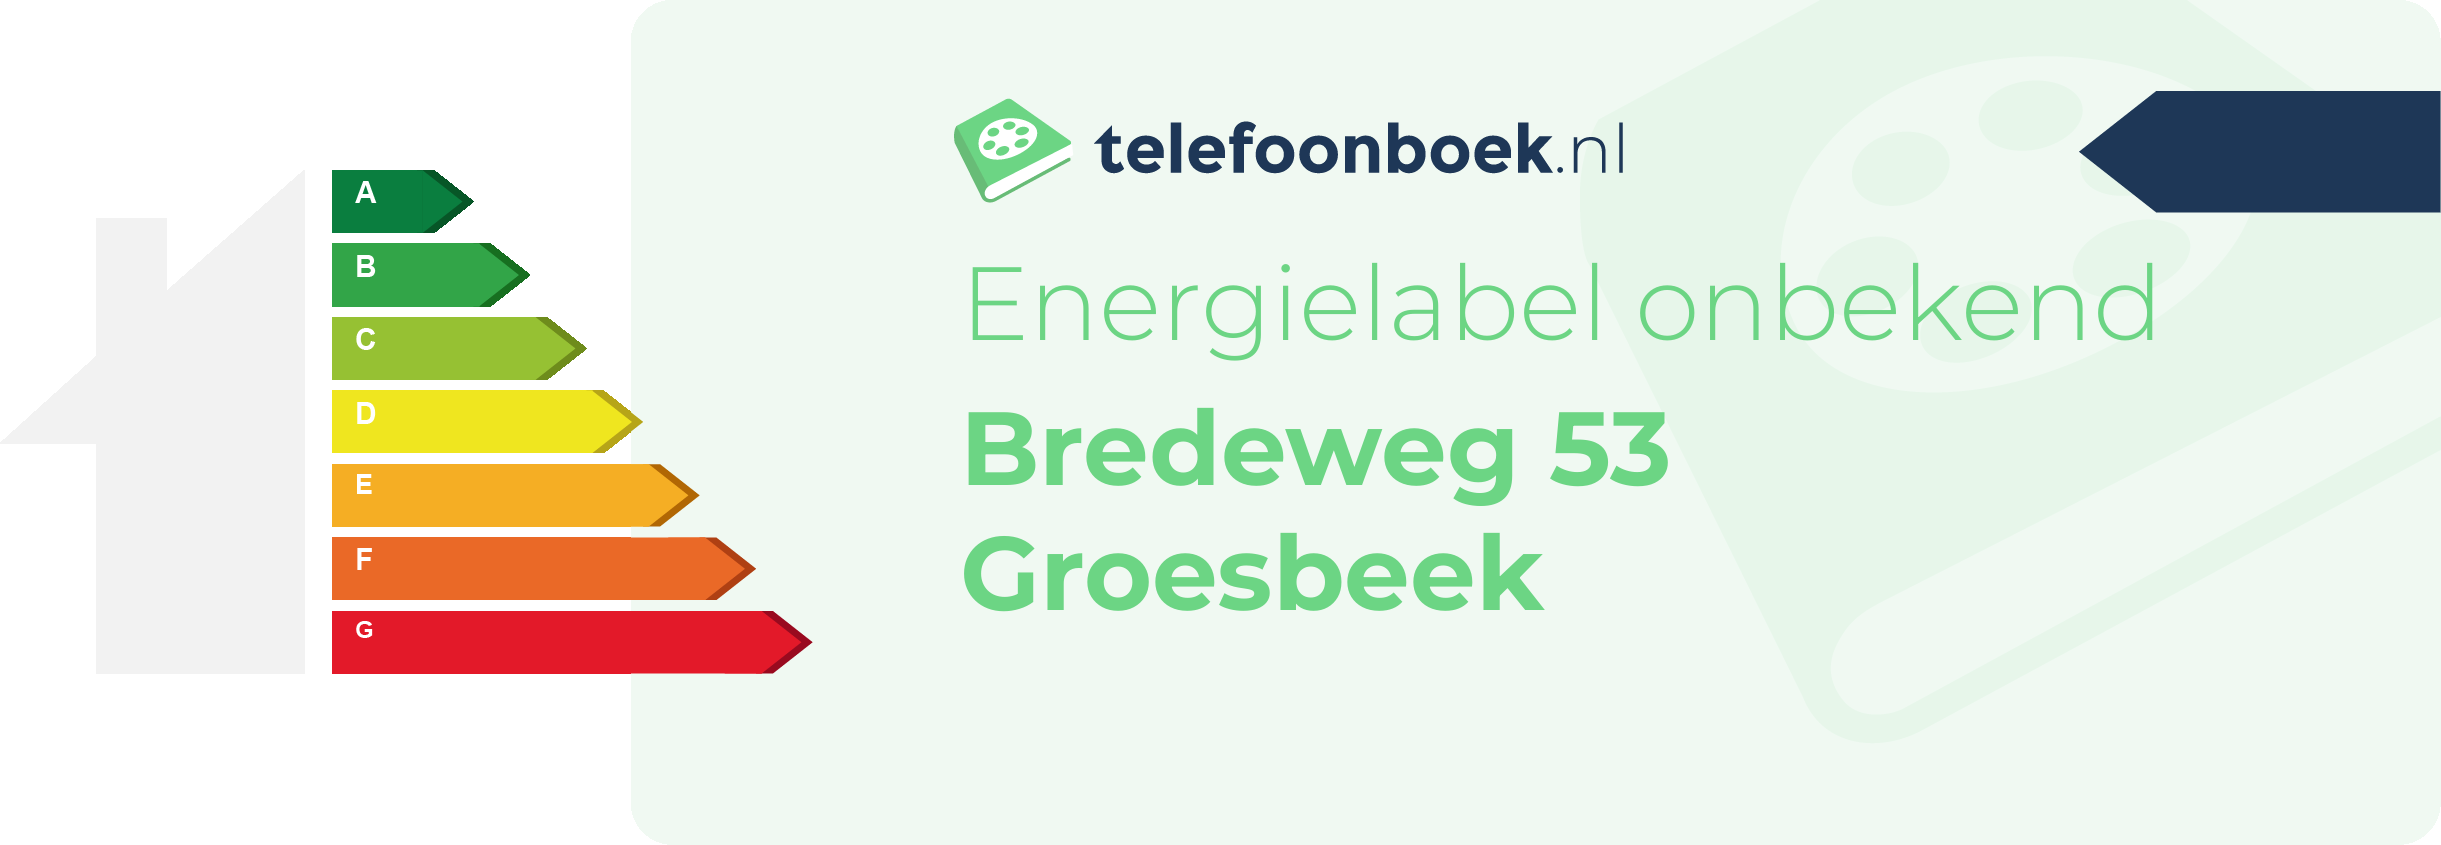 Energielabel Bredeweg 53 Groesbeek